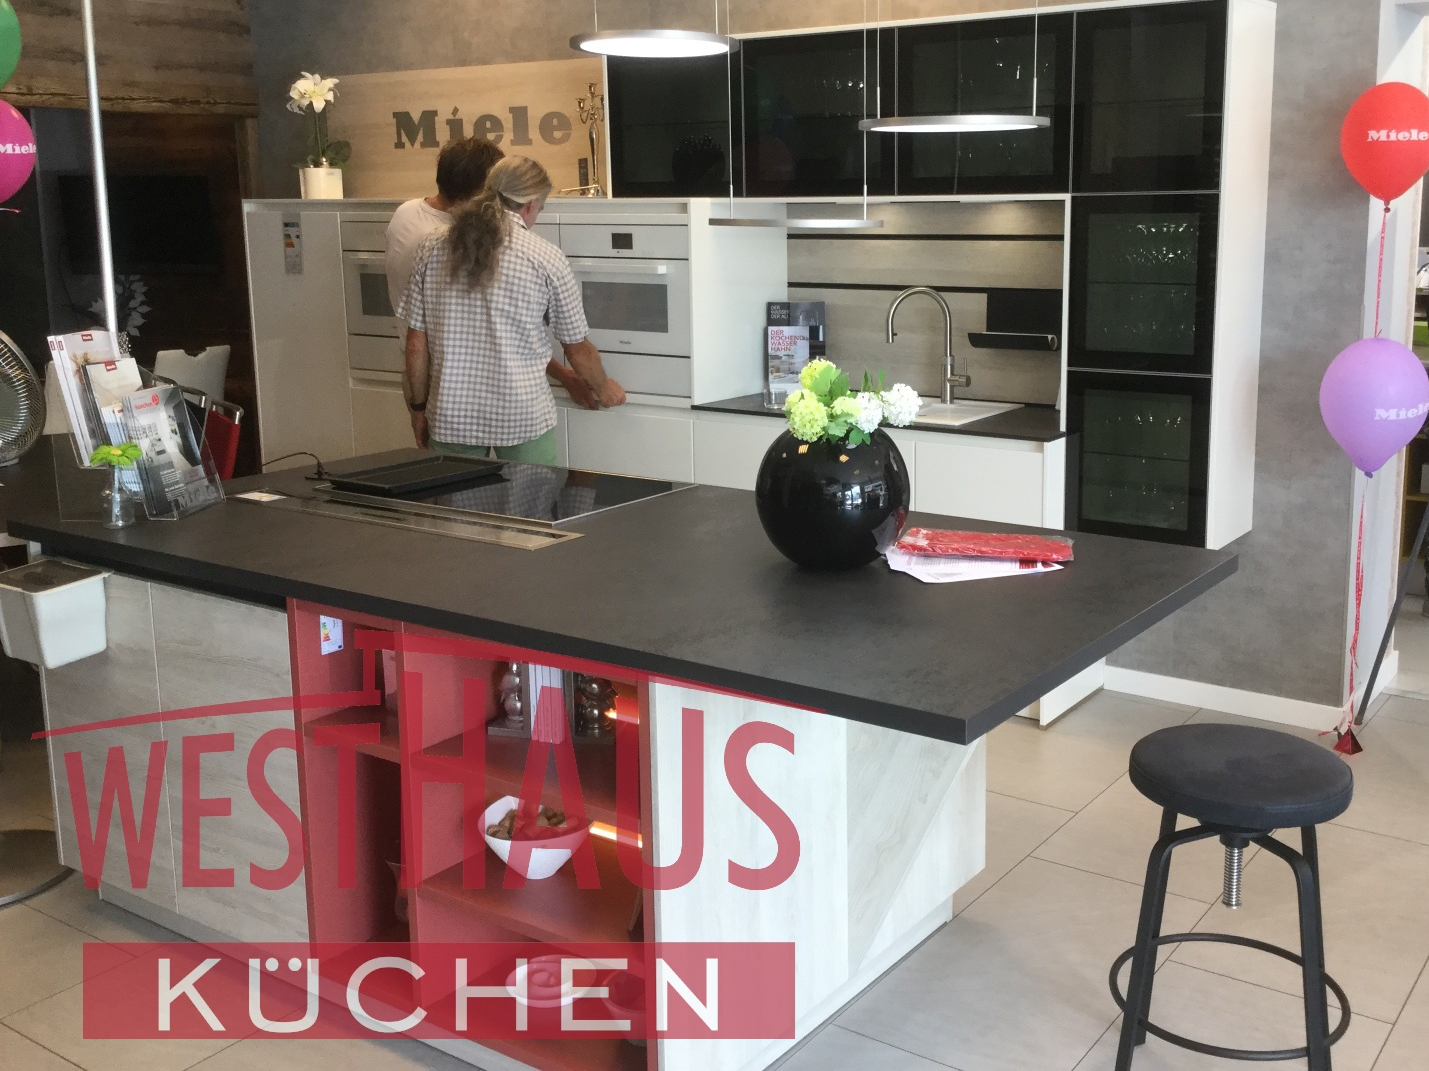 Bilder Westhaus Küchen & Wohndesign